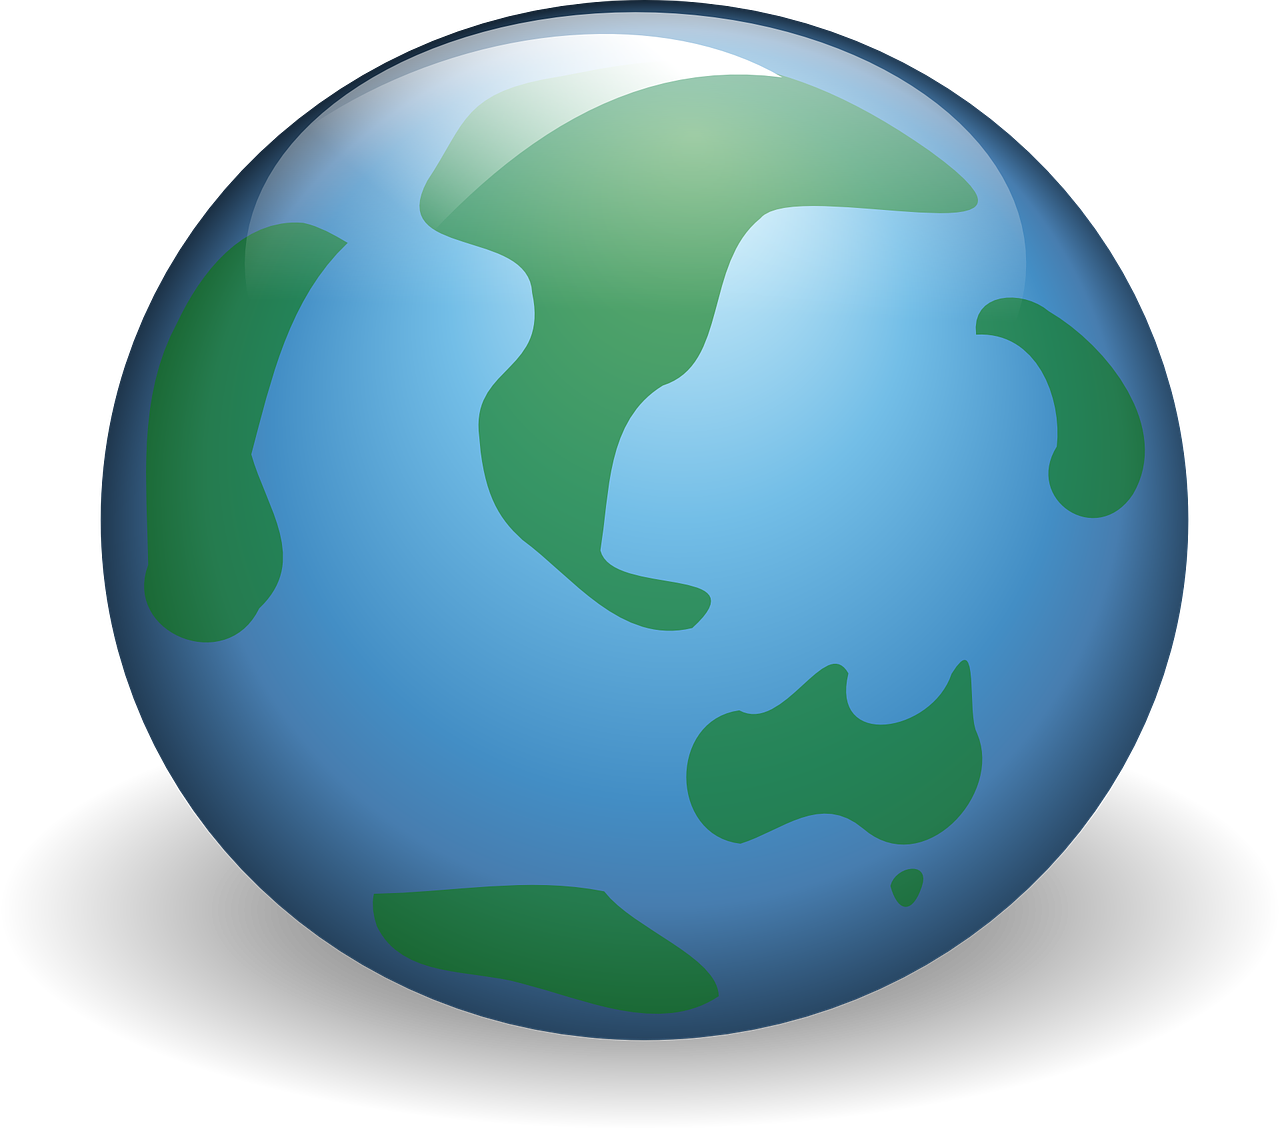 world, globe, web-306020.jpg